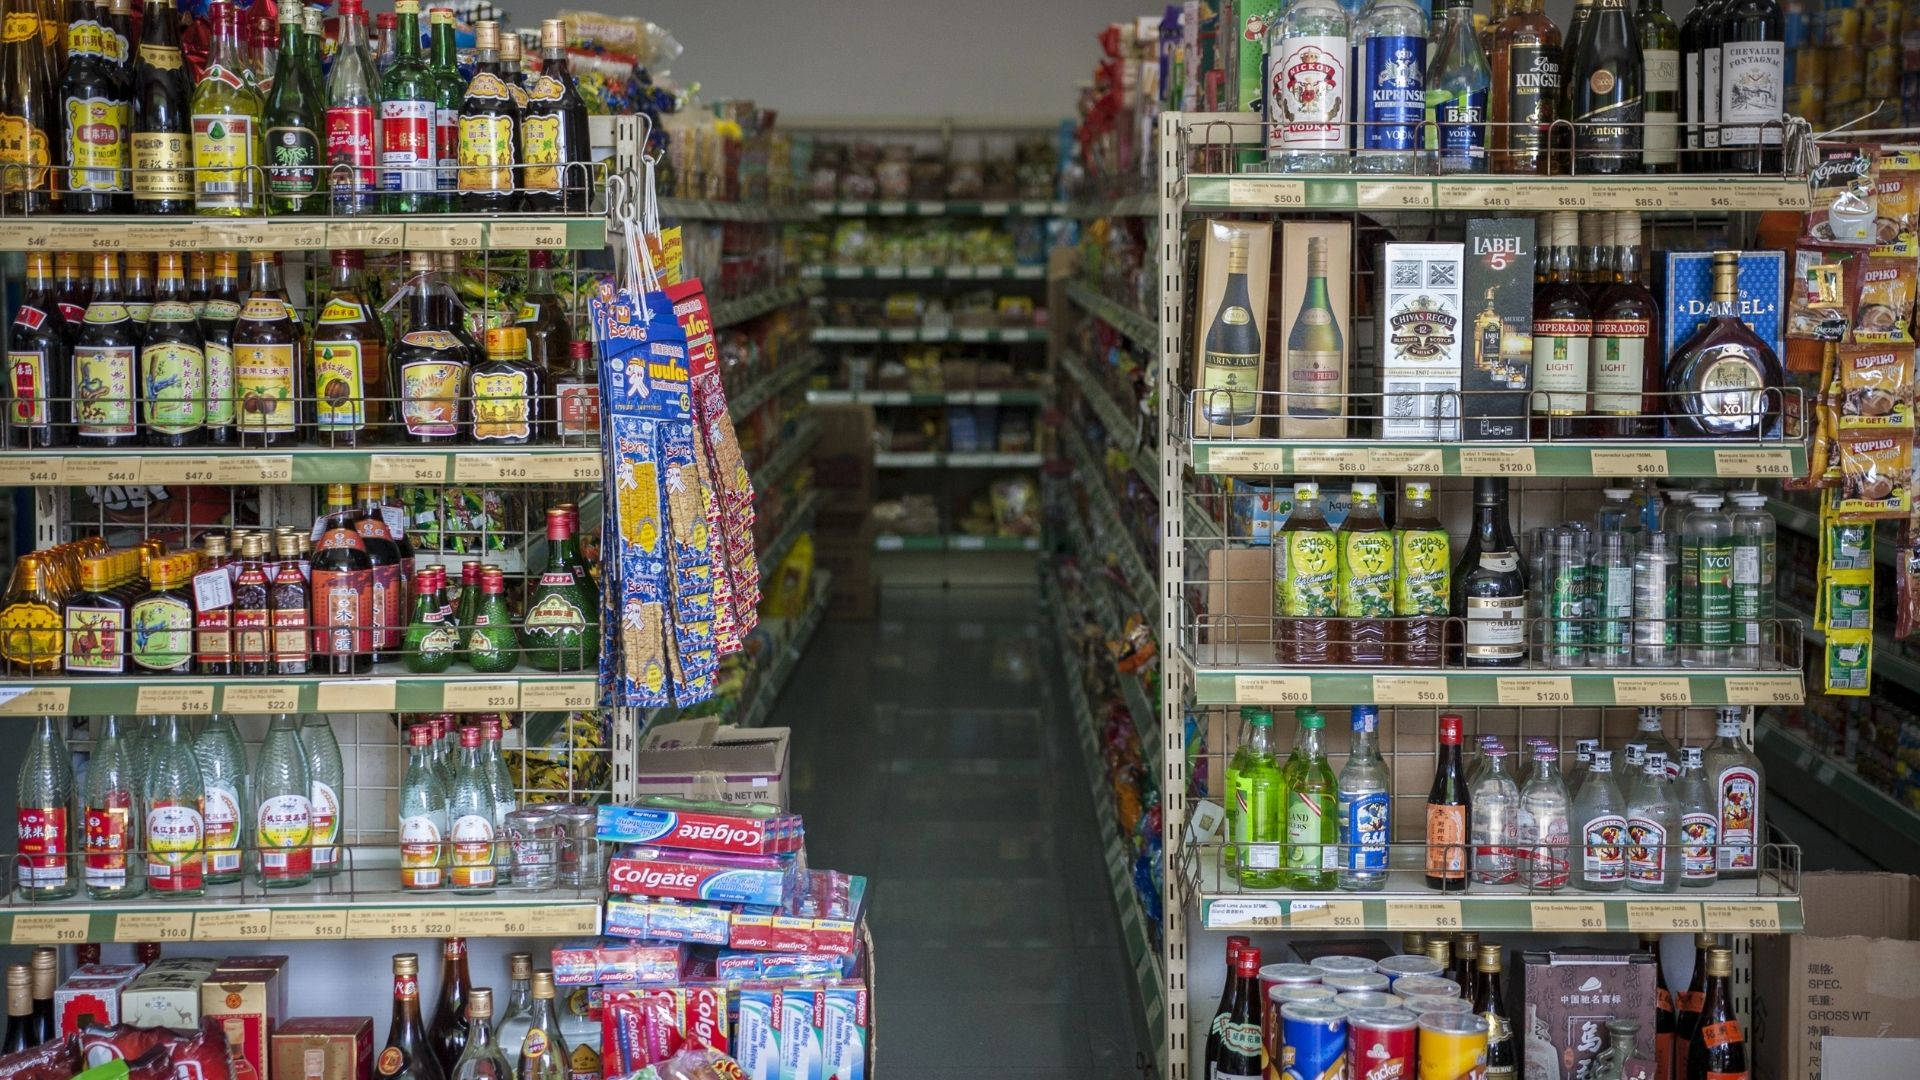 Superbutikkens alkohol: Skrå linjer, der krydser hinanden. Wallpaper